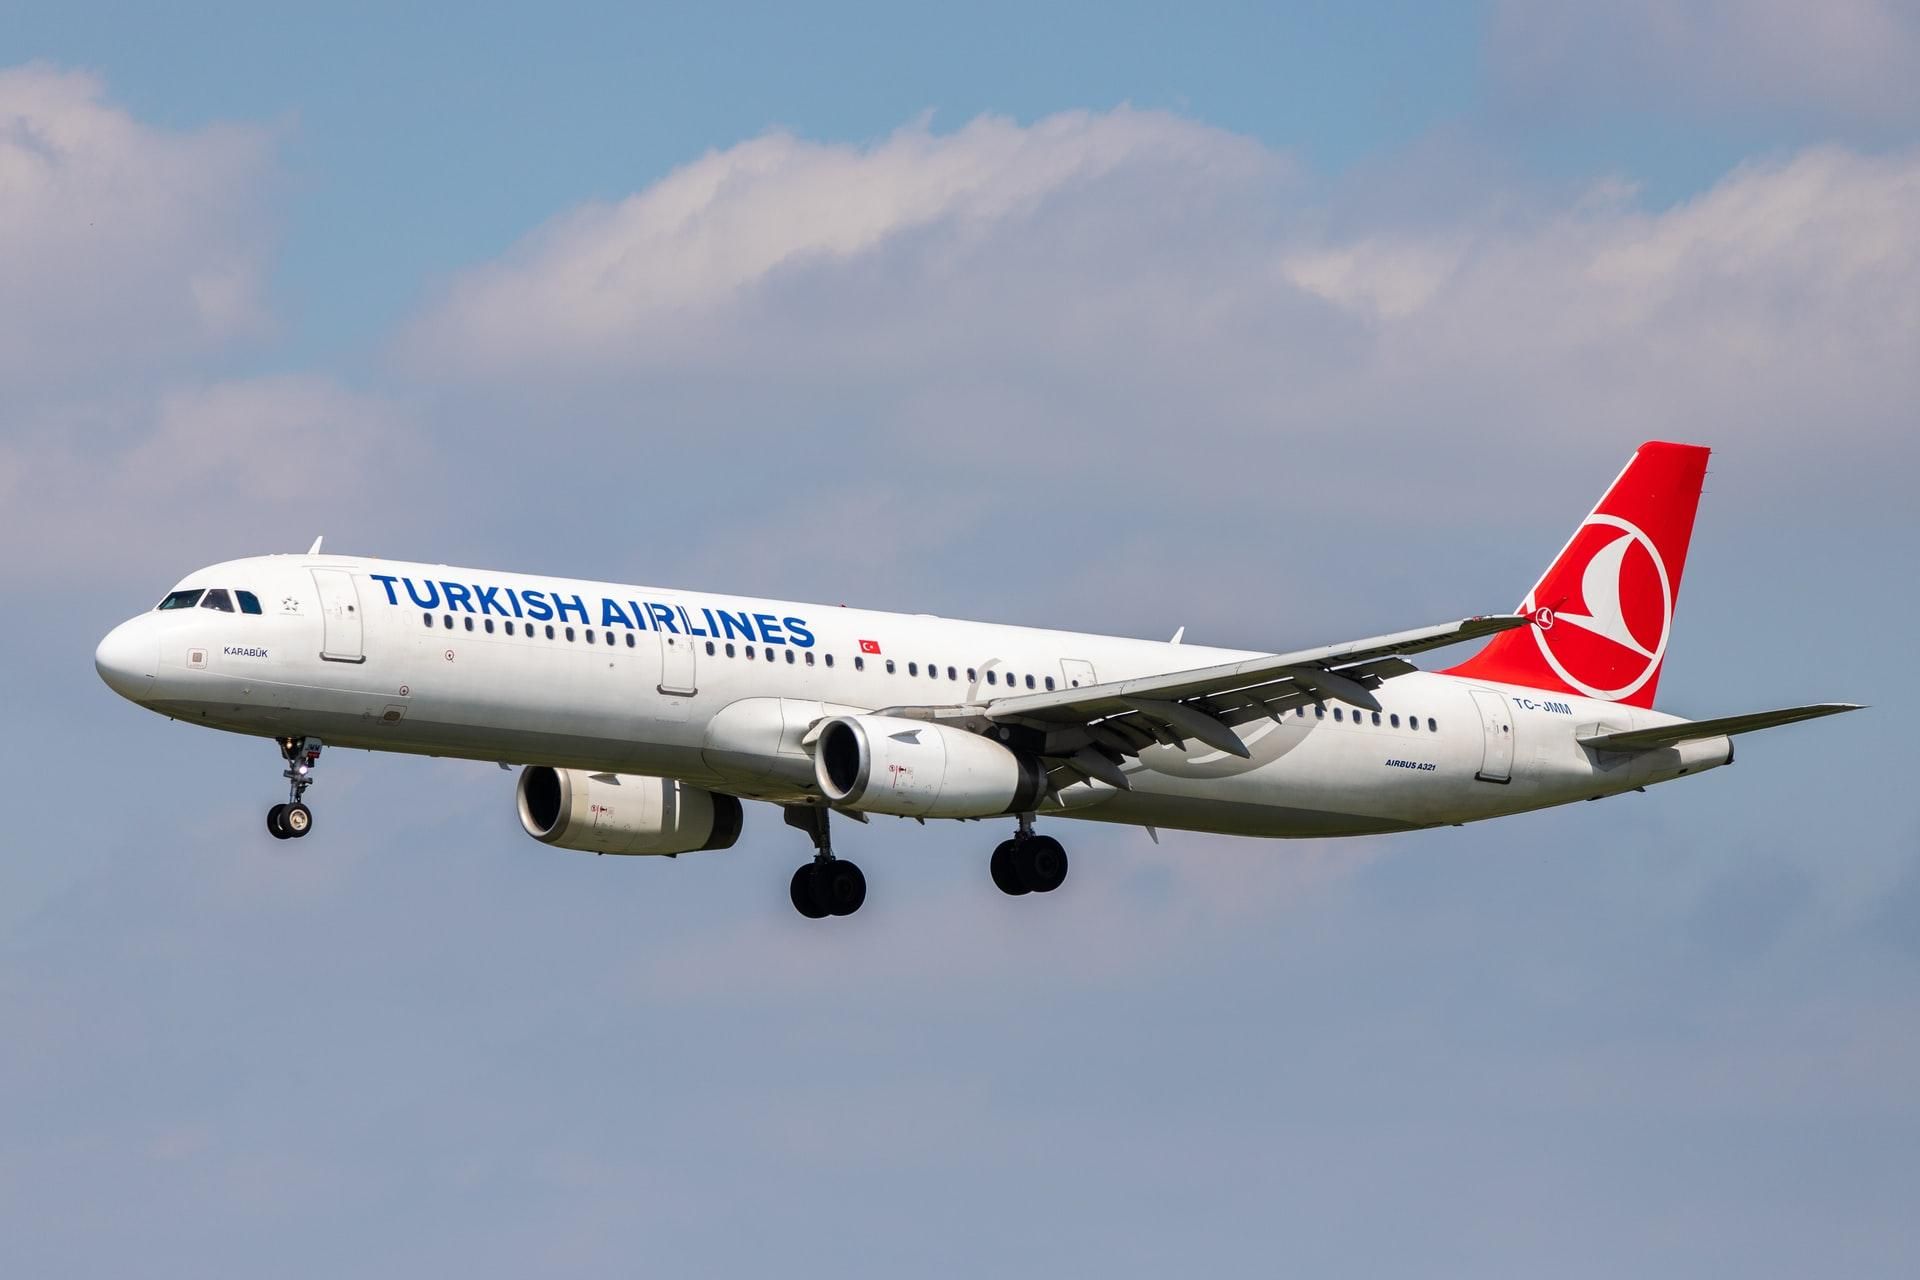 Безумная акция от Turkish Airlines  подборка дешевых рейсов для украинцев за границей - Закордон